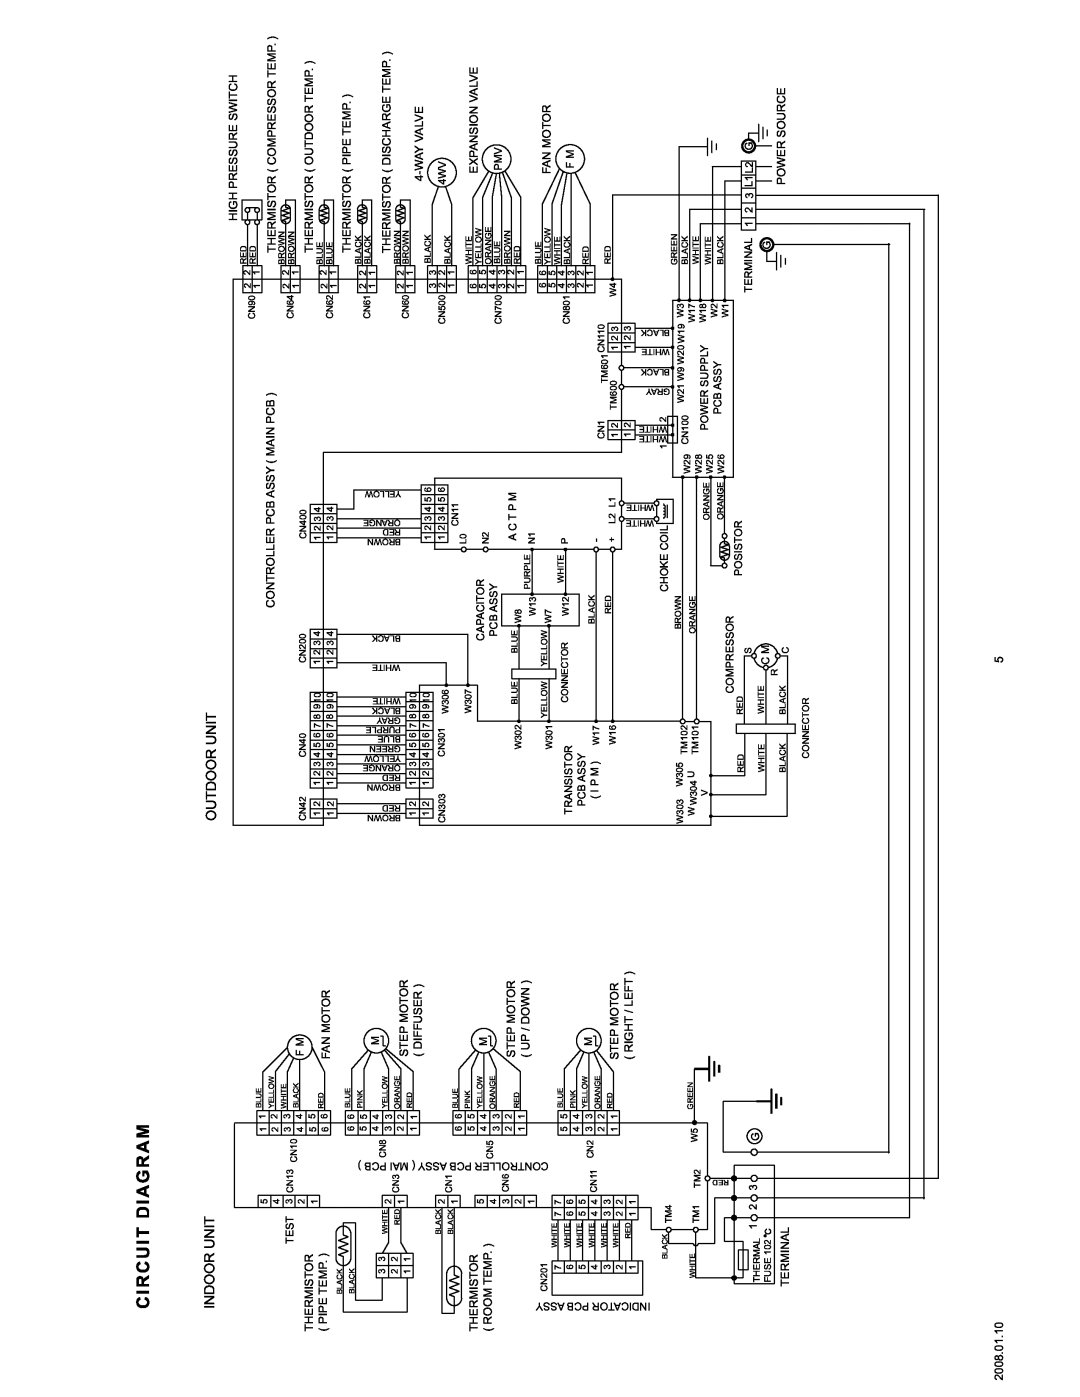 Friedrich MR36C3F, MW36C3F, MW30C3F, MR30C3F specifications Circuit Diagram, Indoor Unit, Outdoor Unit 